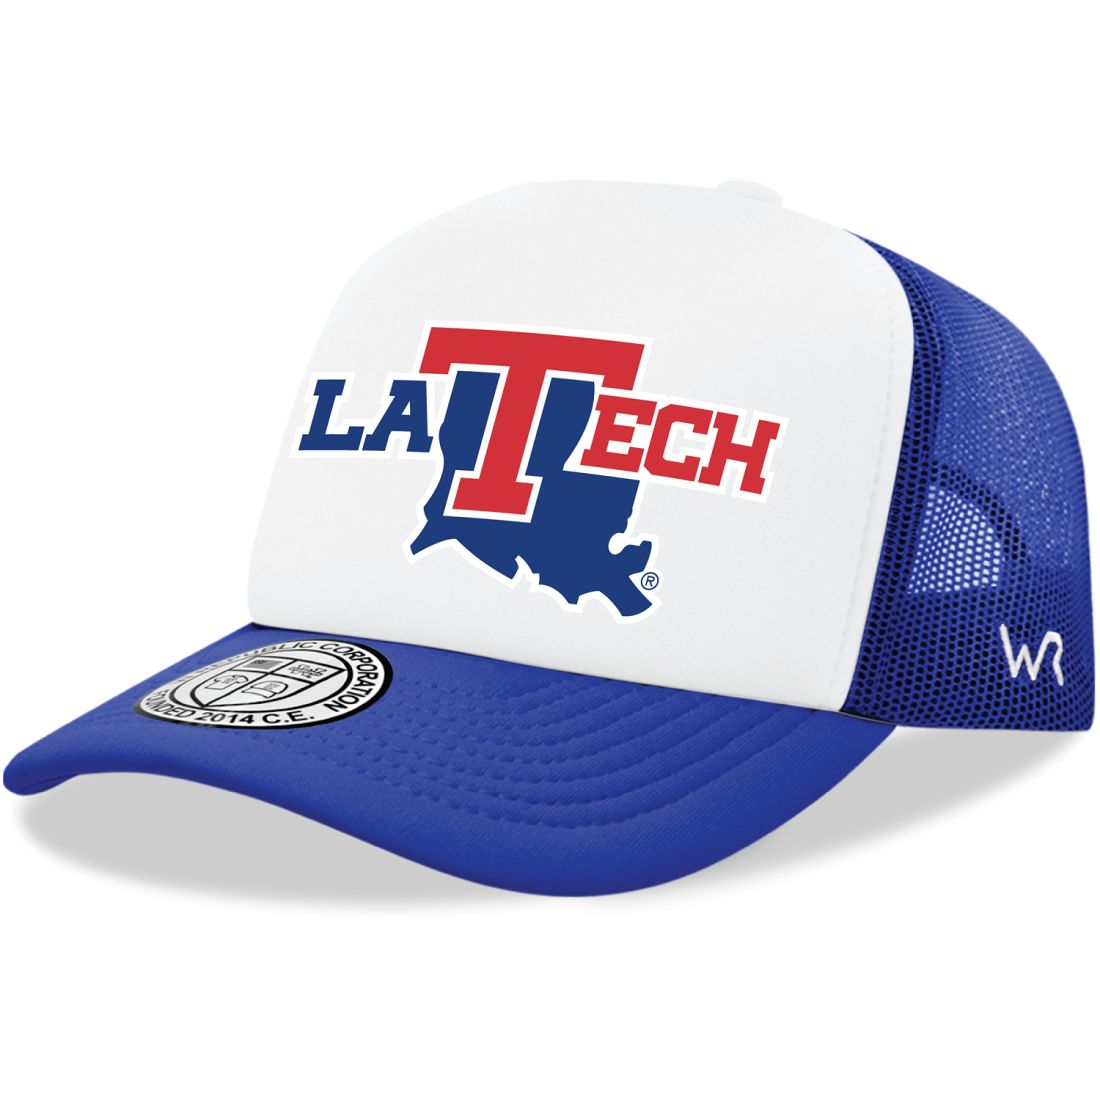 Louisiana Tech University Bulldogs Jumbo Foam Trucker Hats